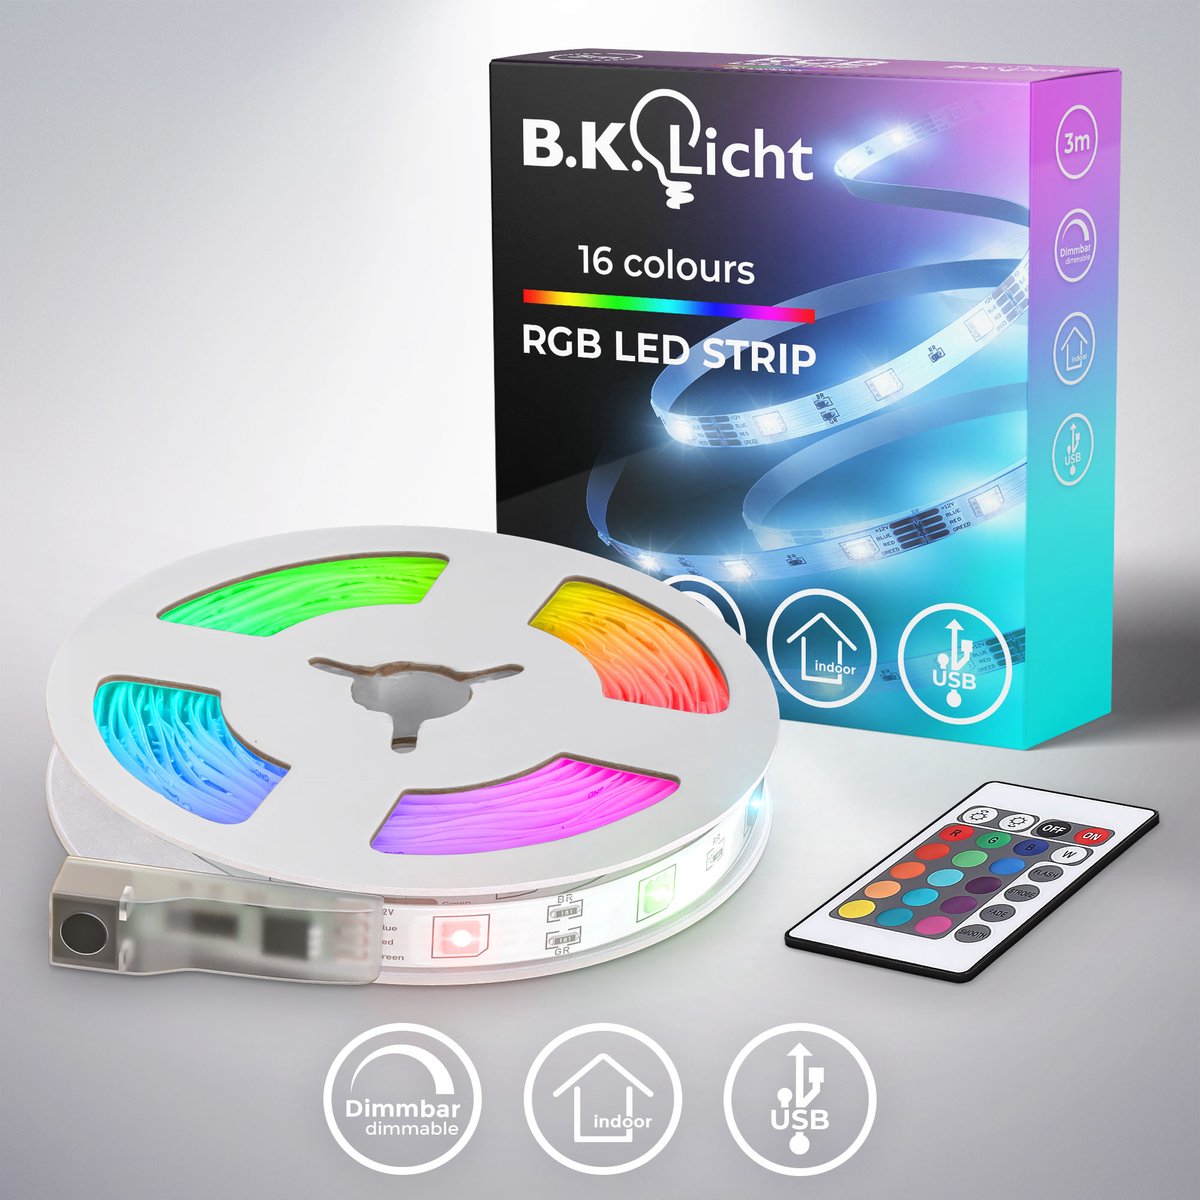 B.K.Licht - Led Strip - 3 meter - USB - RGB - dimbaar - met afstandsbediening